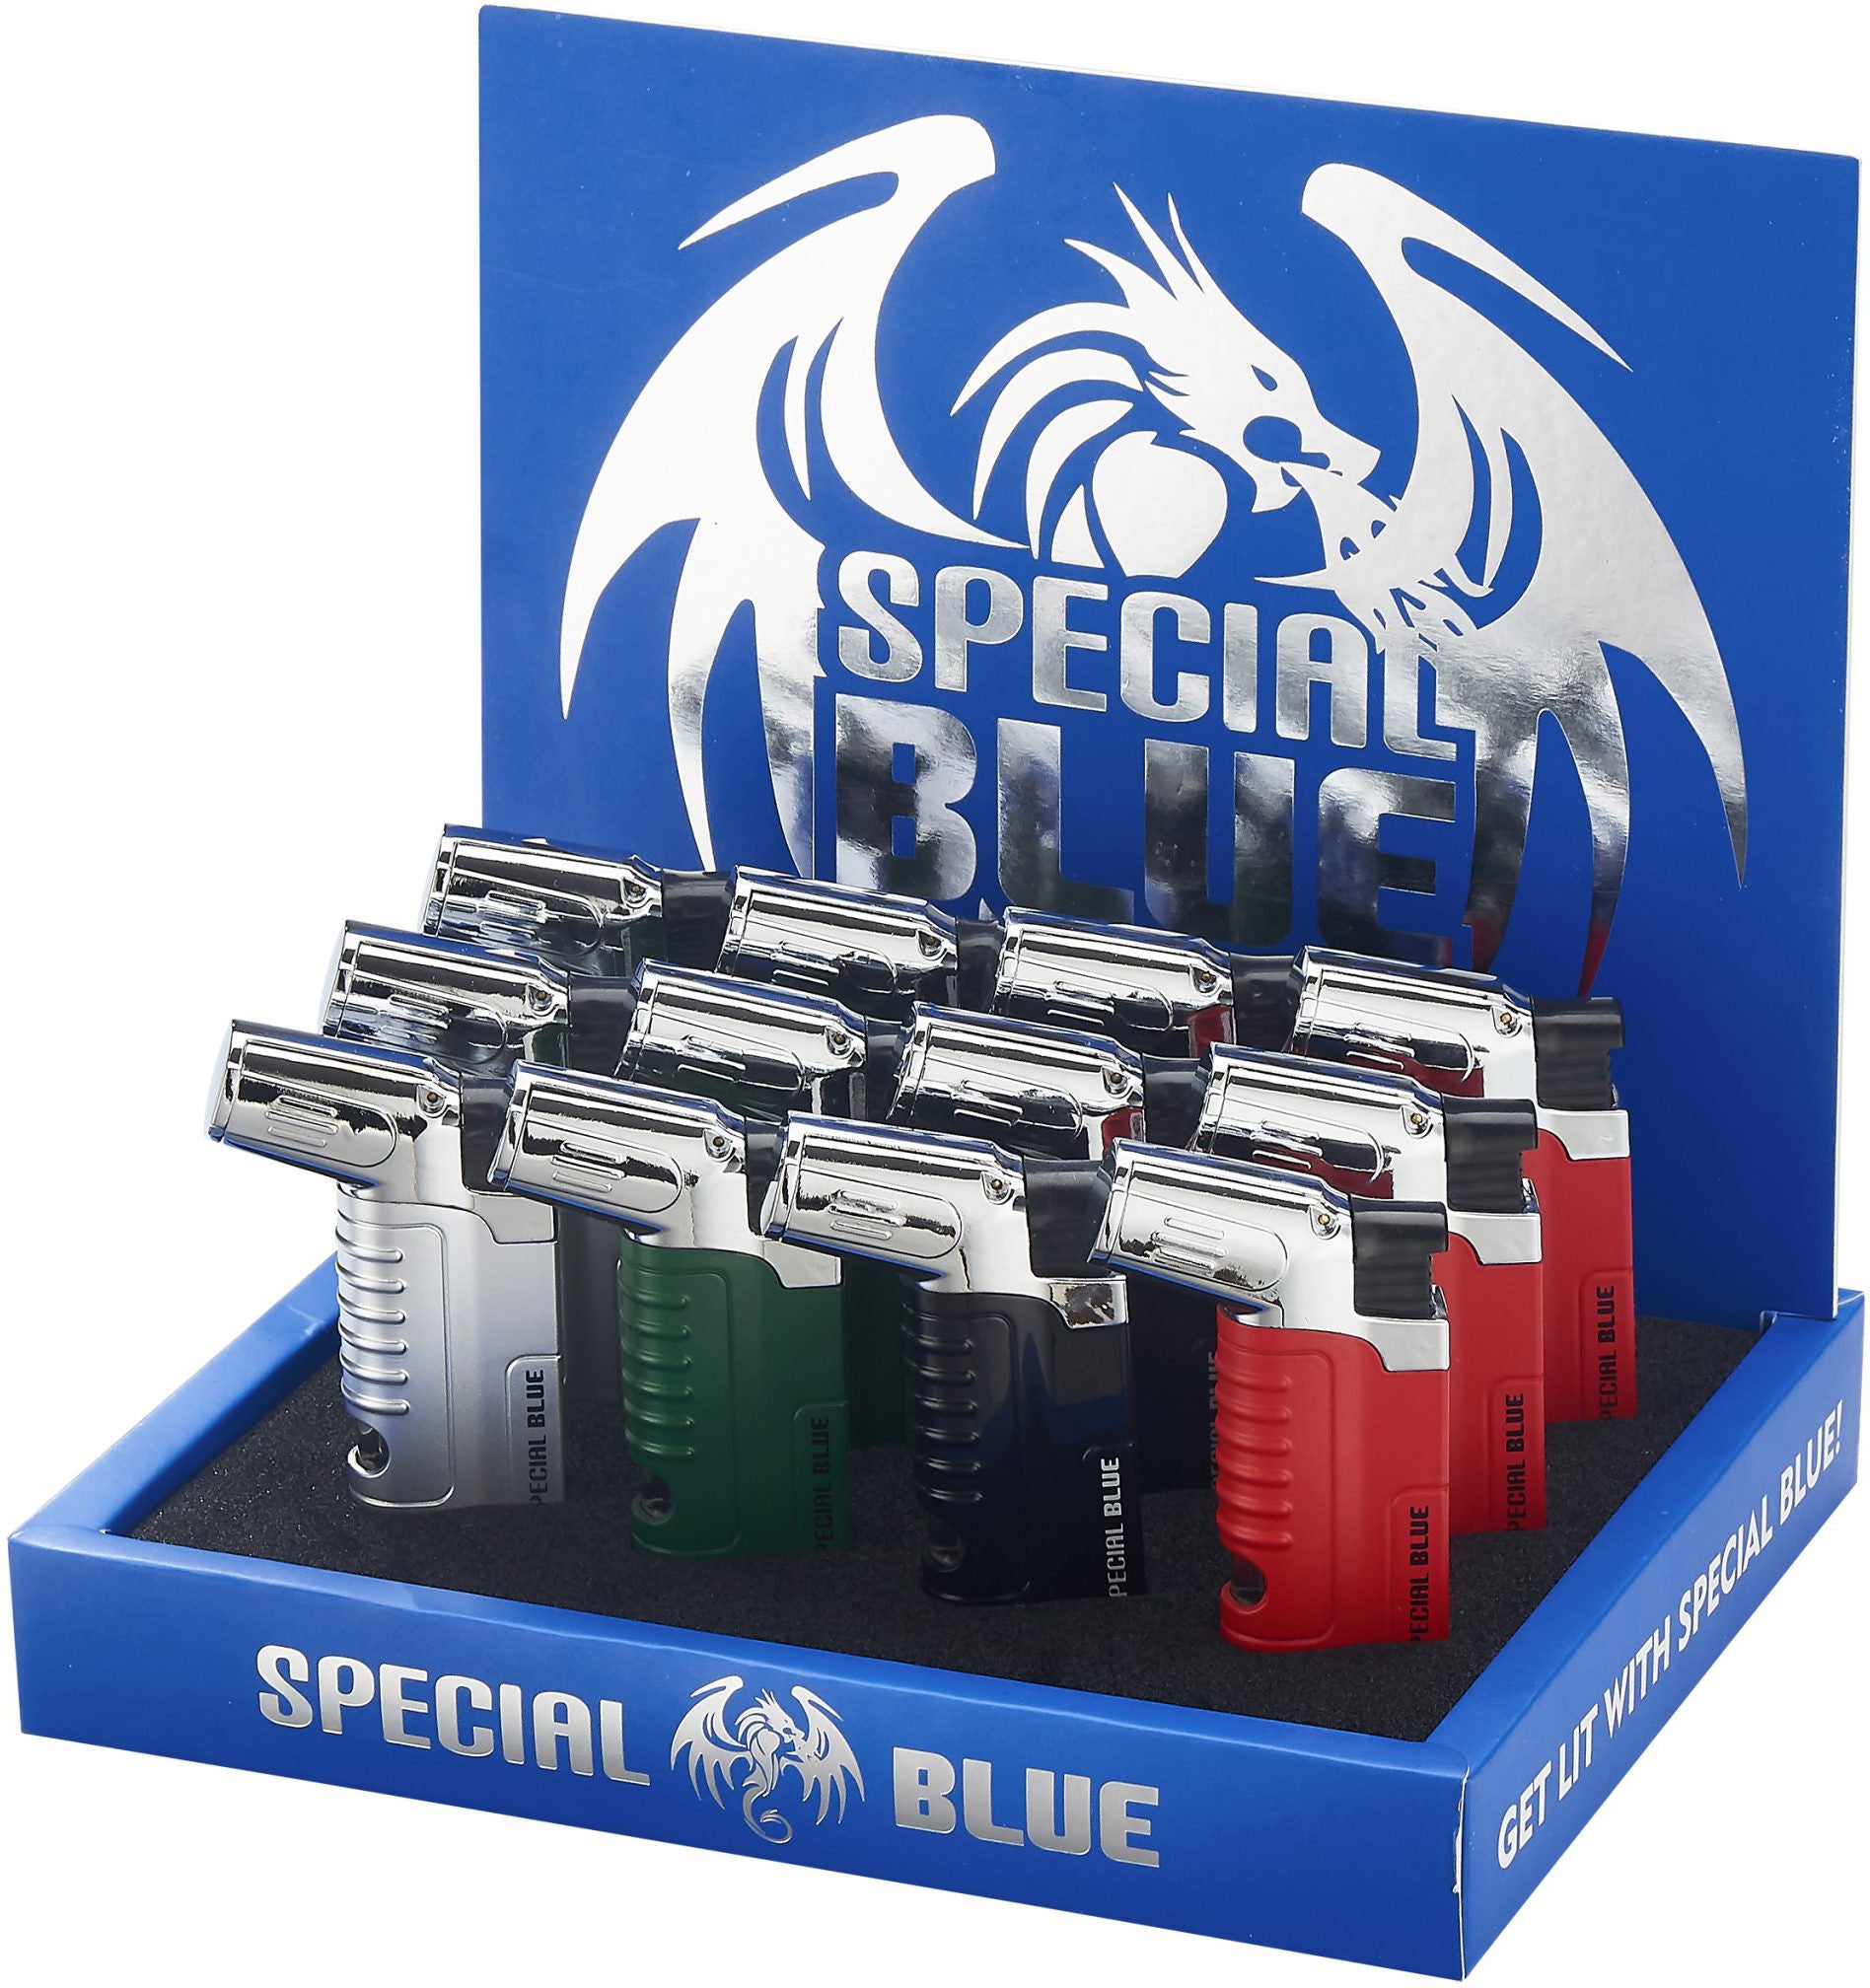 Special Blue Venus Torch Lighter Wholesale – 1 Box / 12pcs